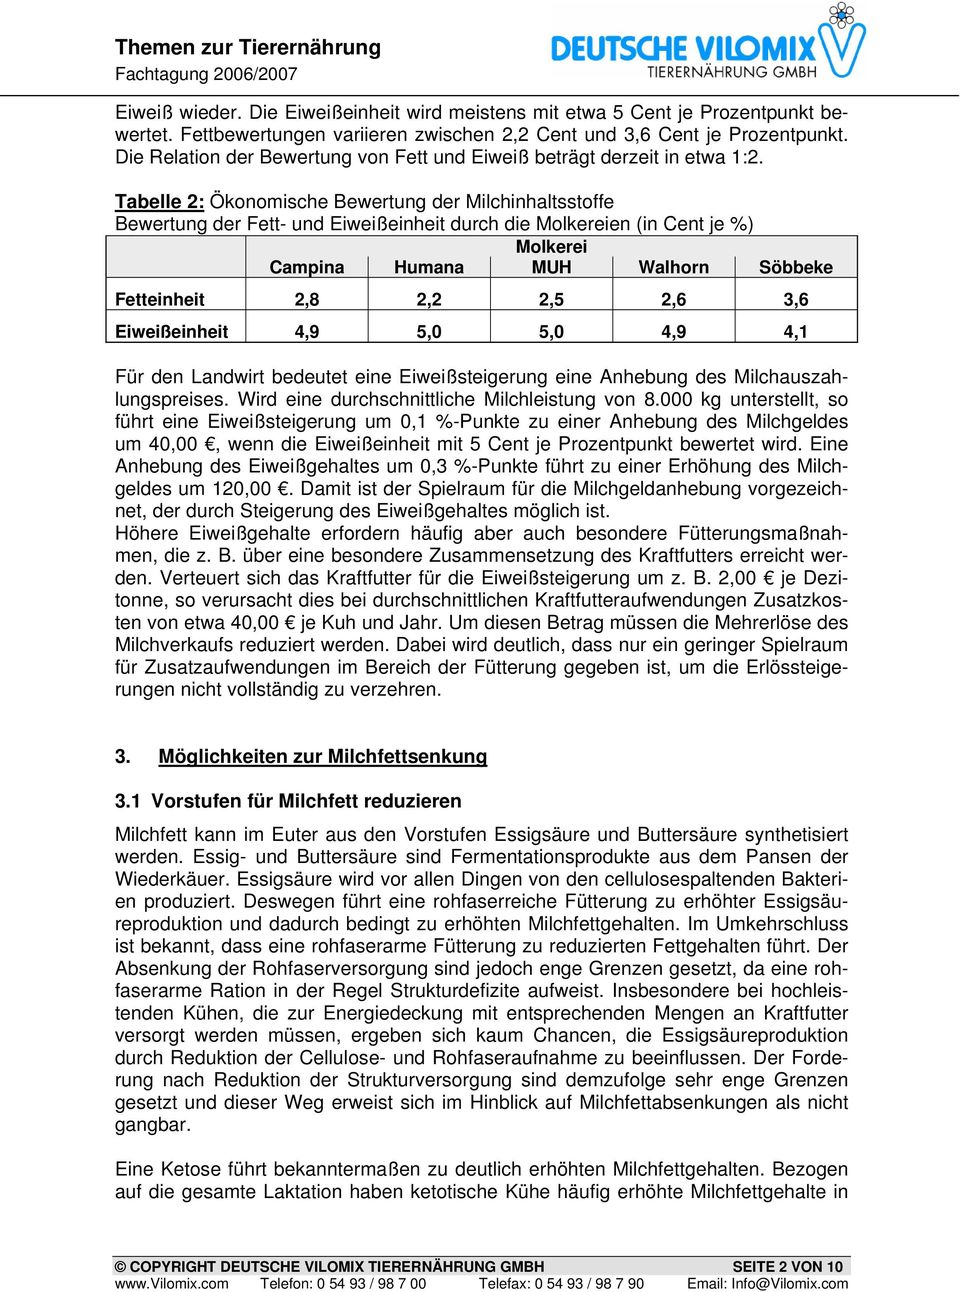 Tabelle 2: Ökonomische Bewertung der Milchinhaltsstoffe Bewertung der Fett- und Eiweißeinheit durch die Molkereien (in Cent je %) Molkerei Campina Humana MUH Walhorn Söbbeke Fetteinheit 2,8 2,2 2,5